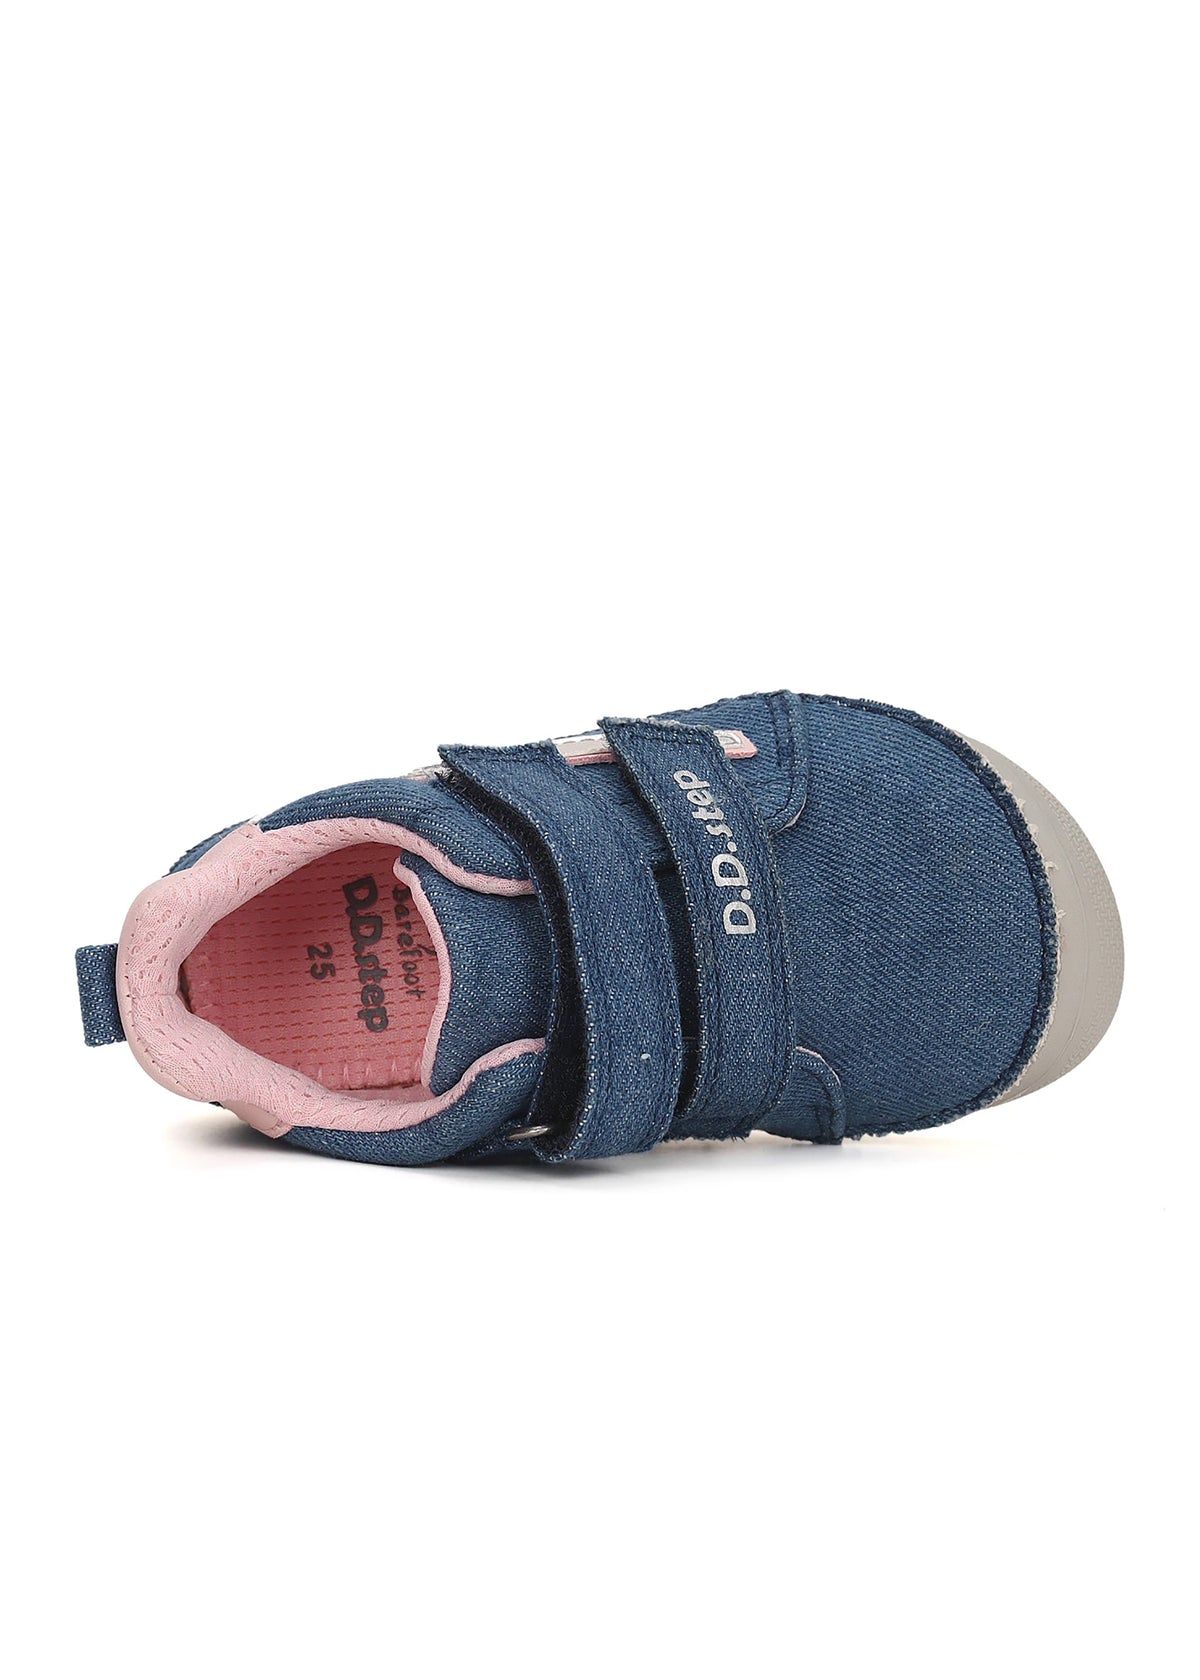 Barfotasneakers för barn - Denimblå canvas, rosa-silver blixt